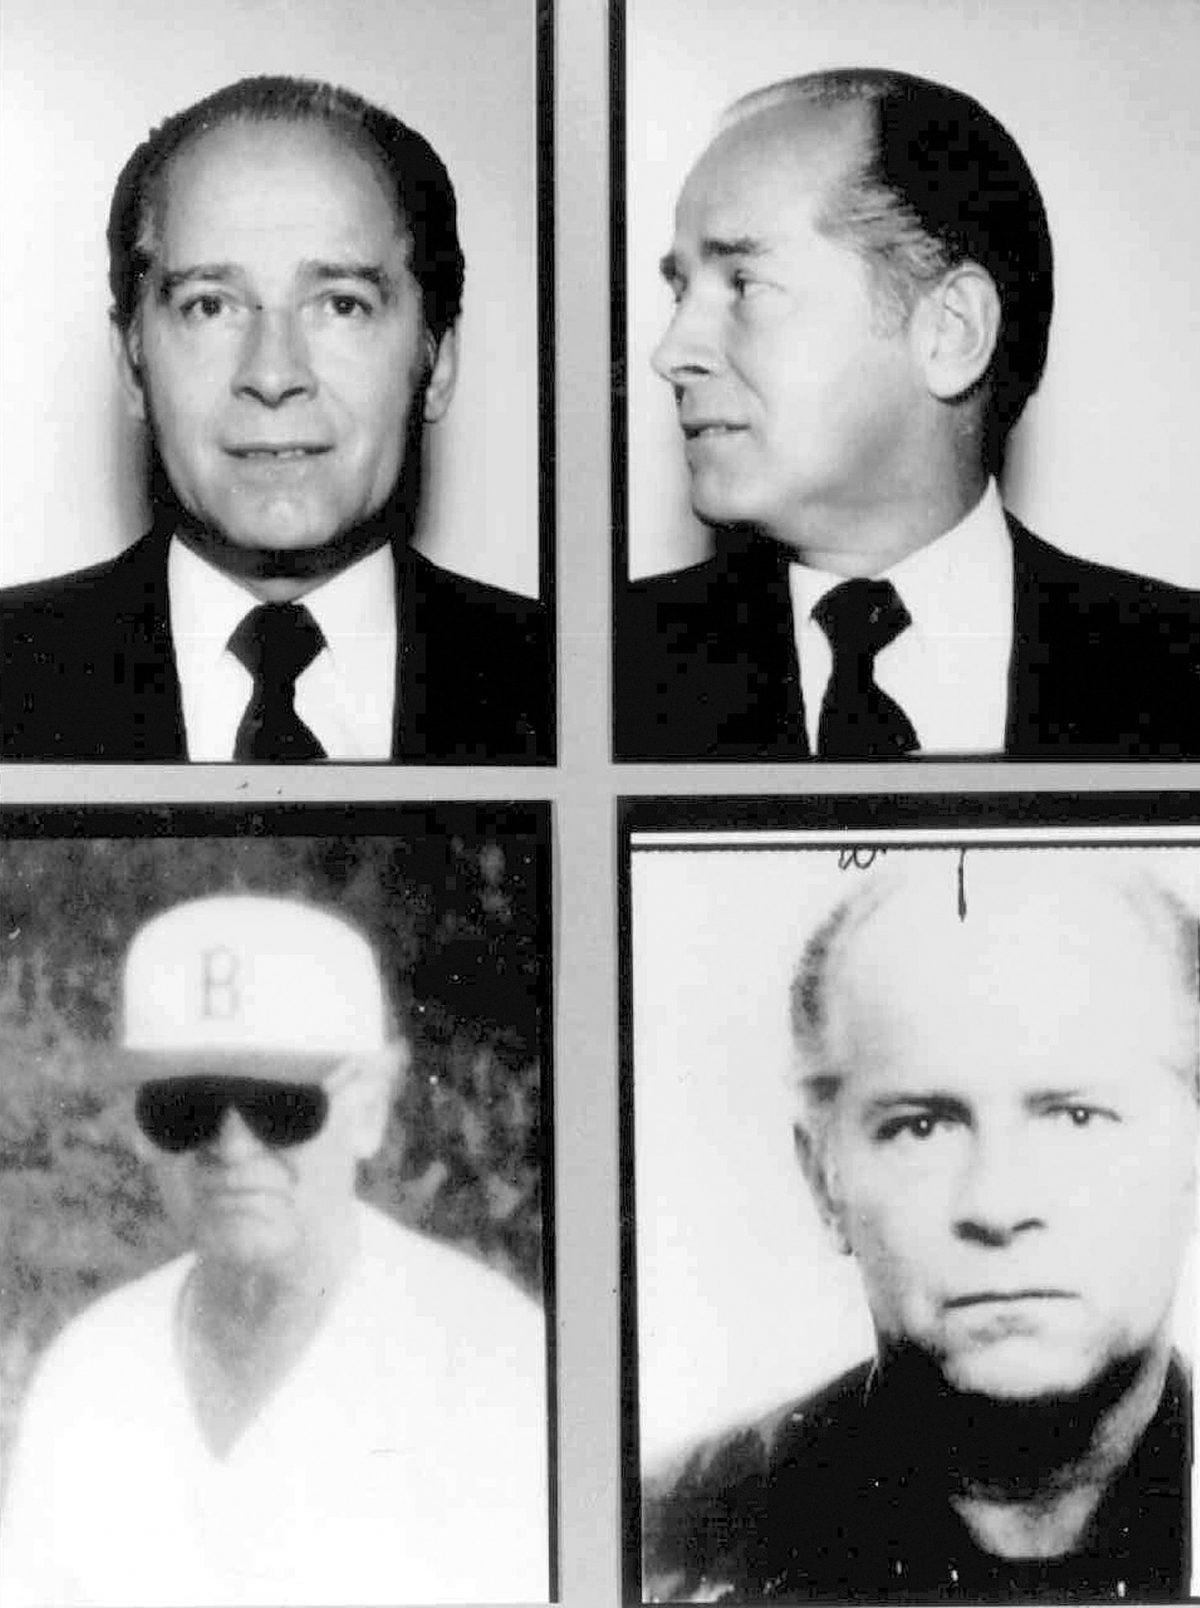 Massachusetts mobster James "Whitey" Bulger. (FBI via AP, File)